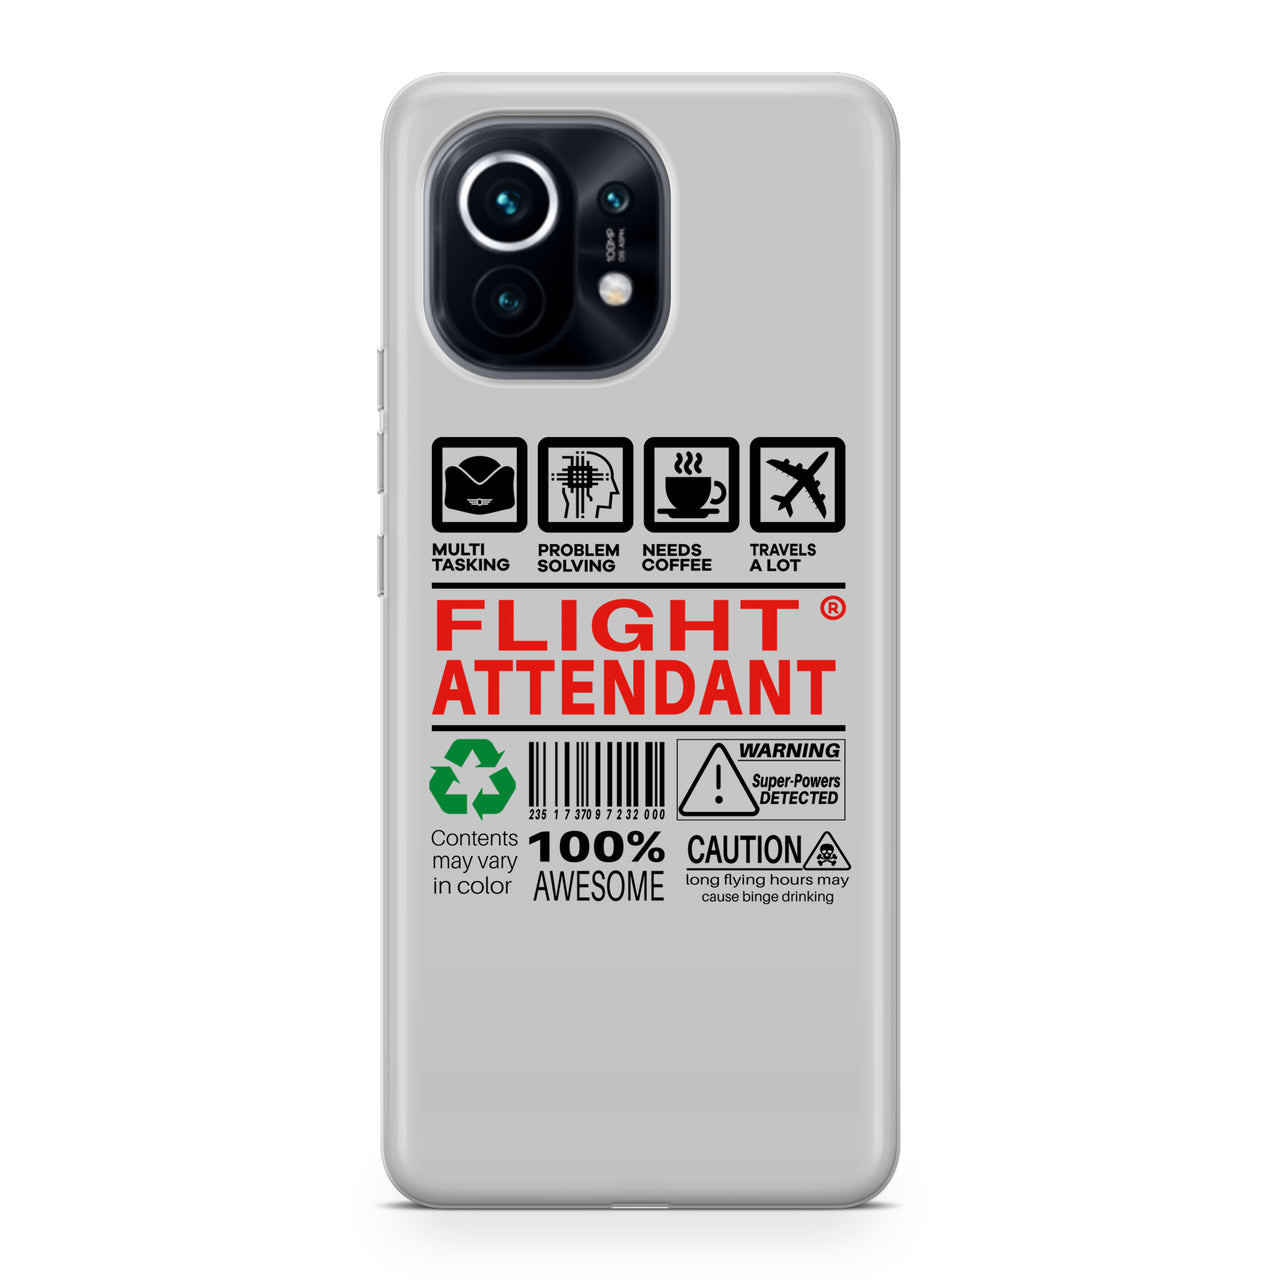 Flight Attendant Label Designed Xiaomi Cases